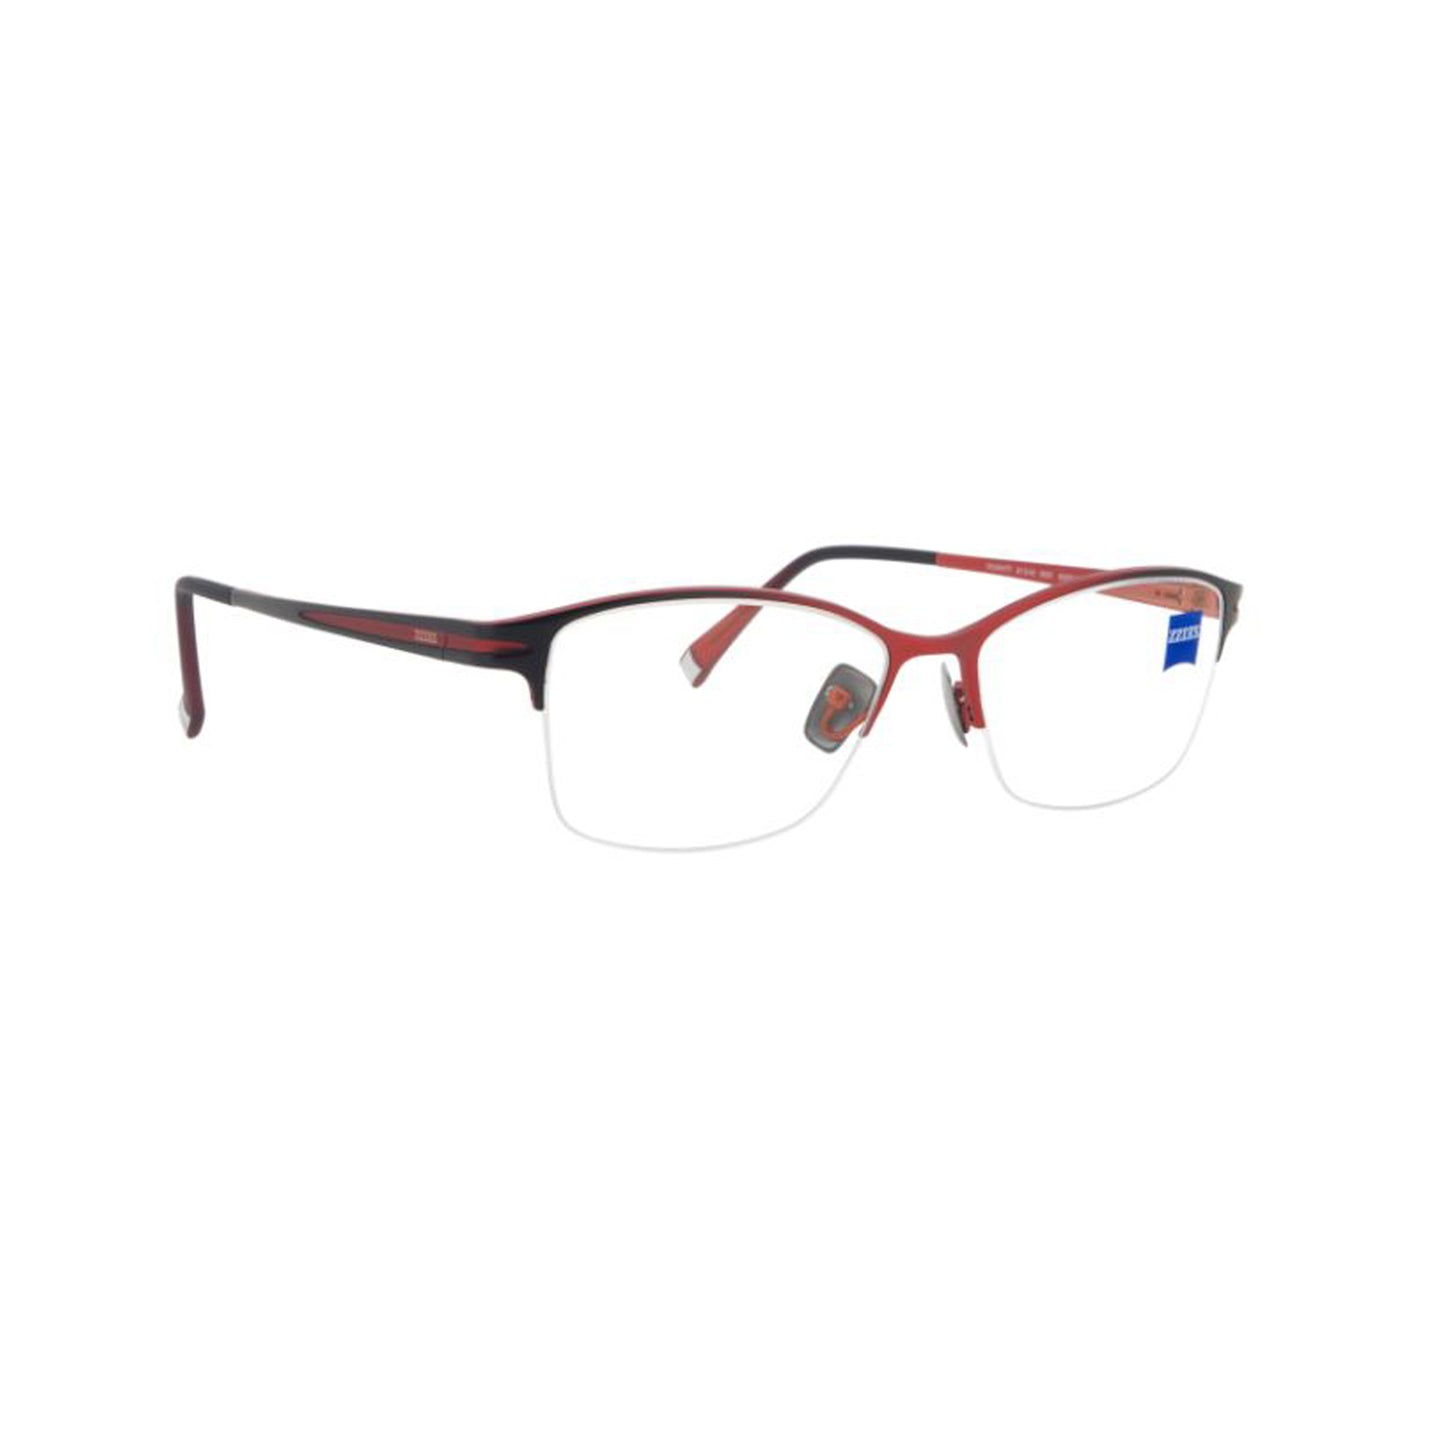 Zeiss Eyewear Brown Cat-Eye Metal Half Rim Eyeglasses. Made in Germany ZS30006-Y22